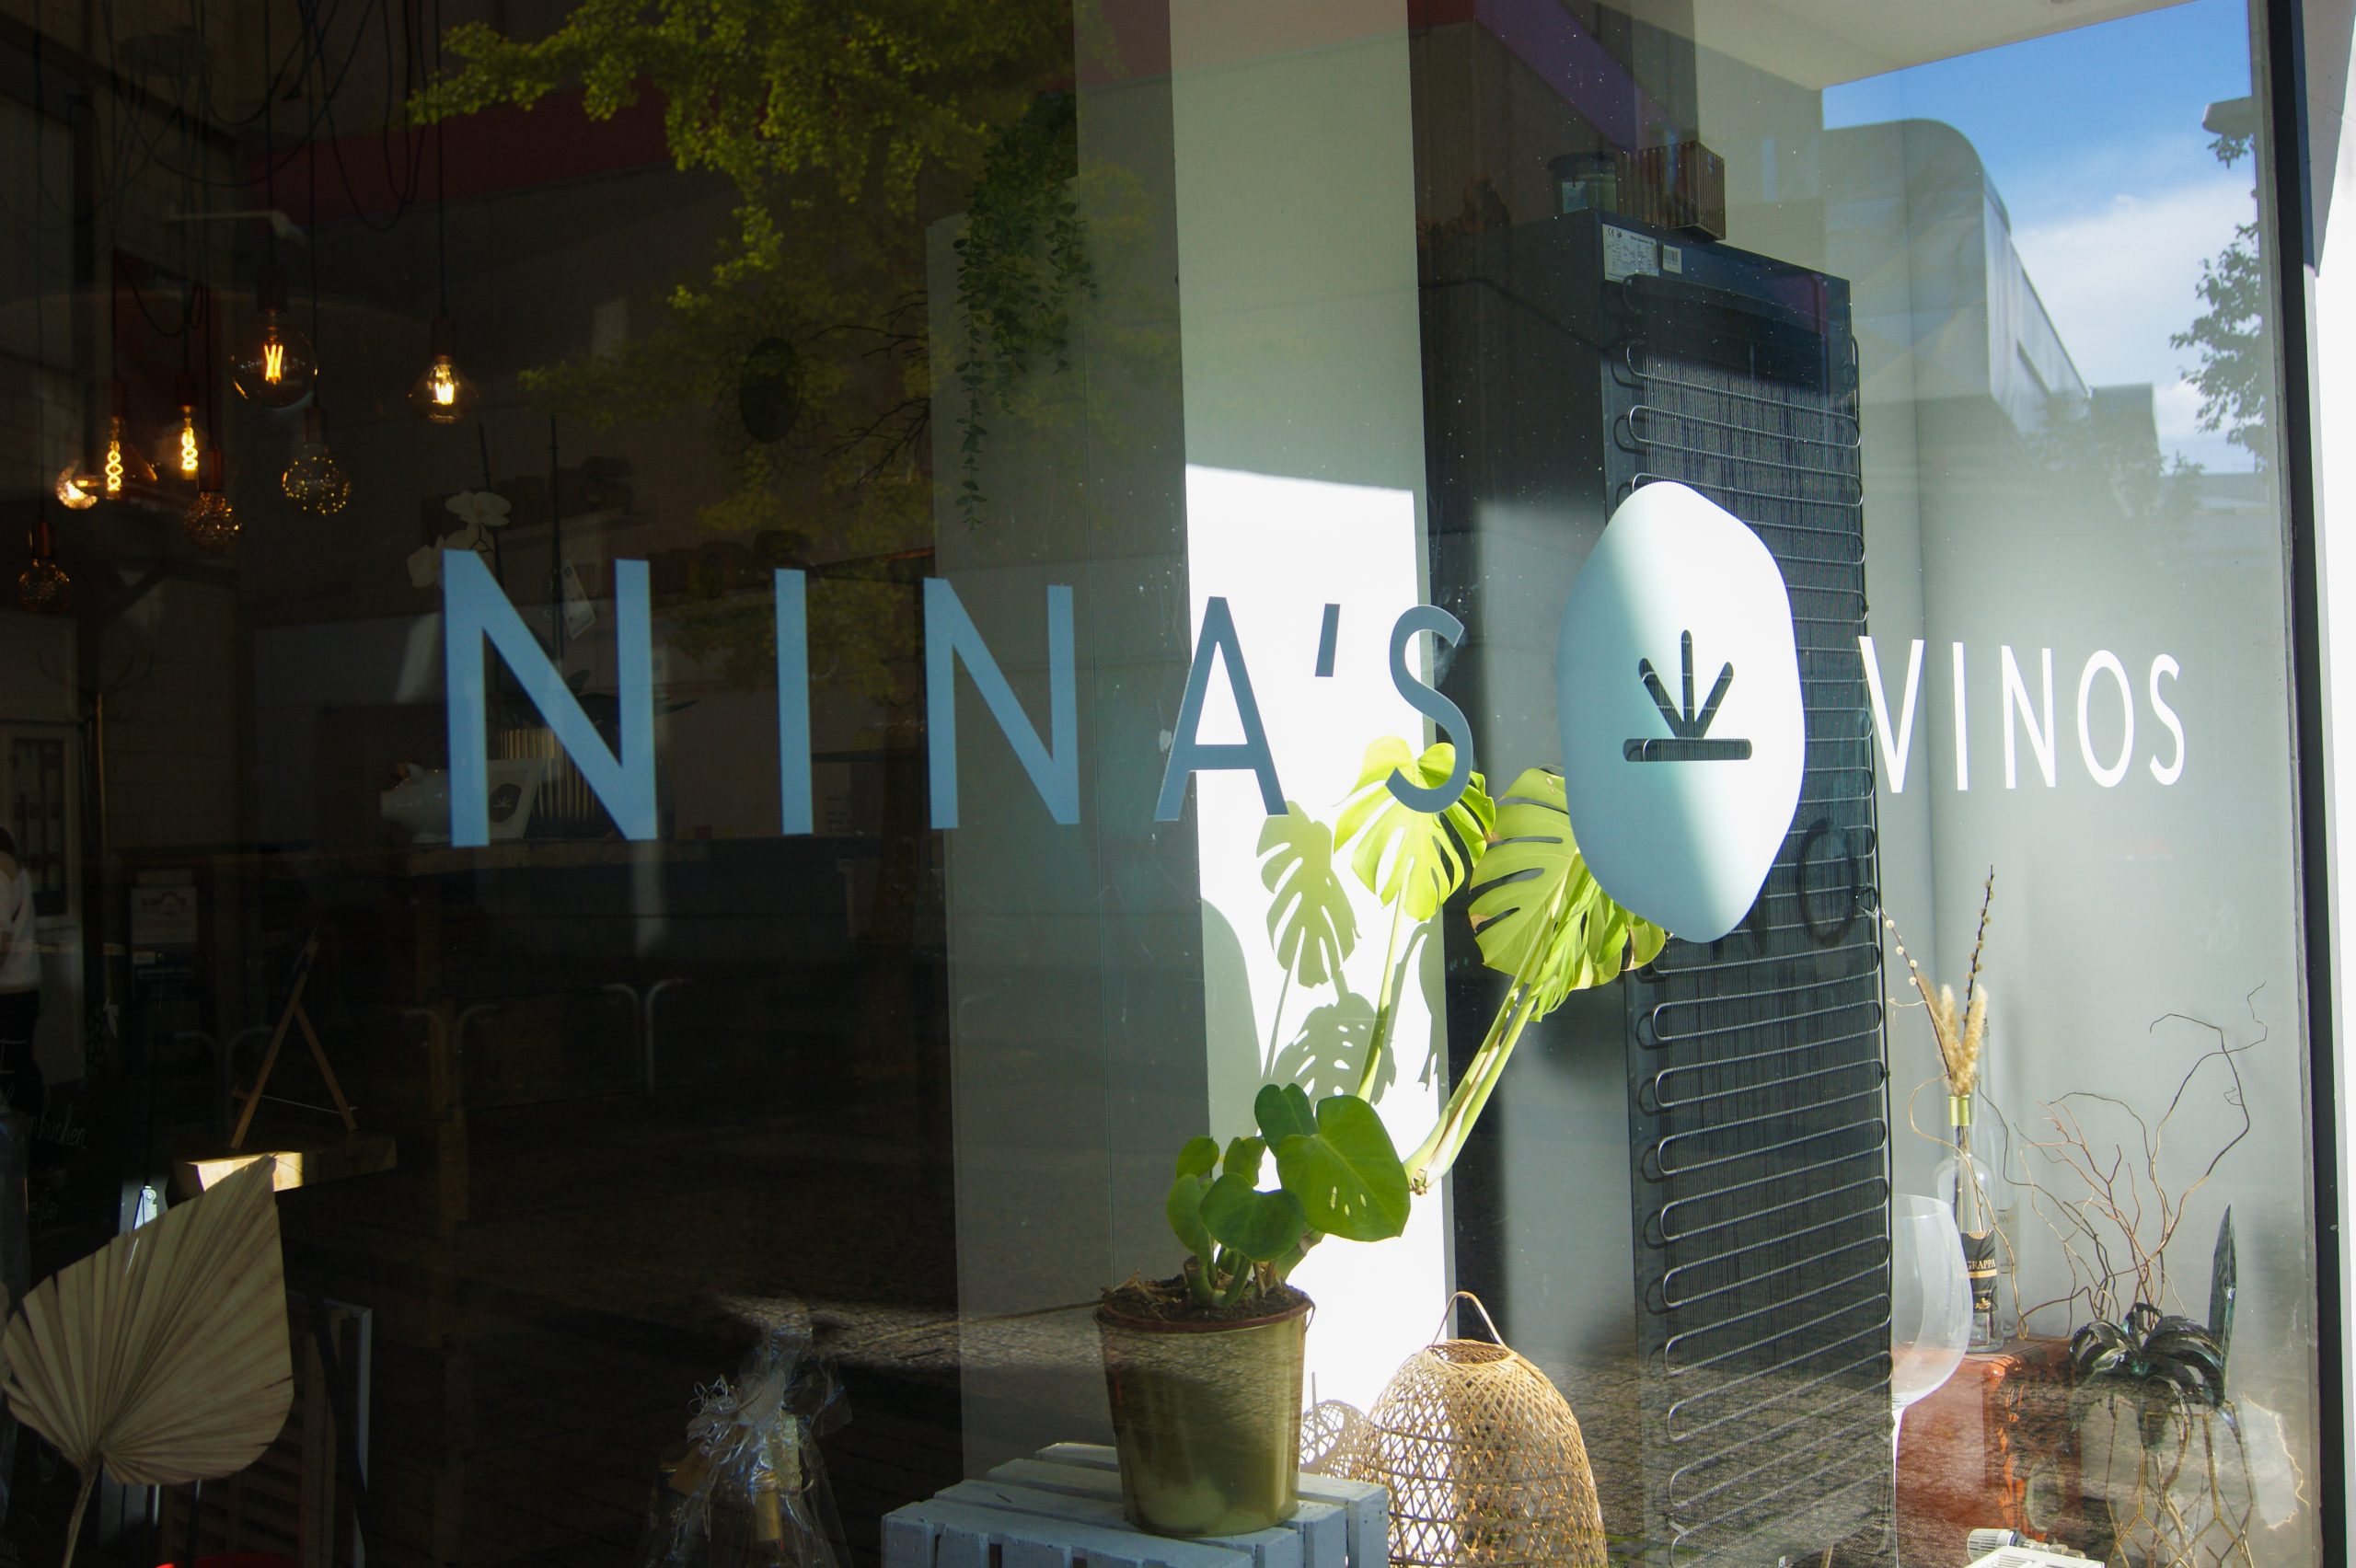 Das Bild zeigt die Weinbar Ninas Vinos in Datteln